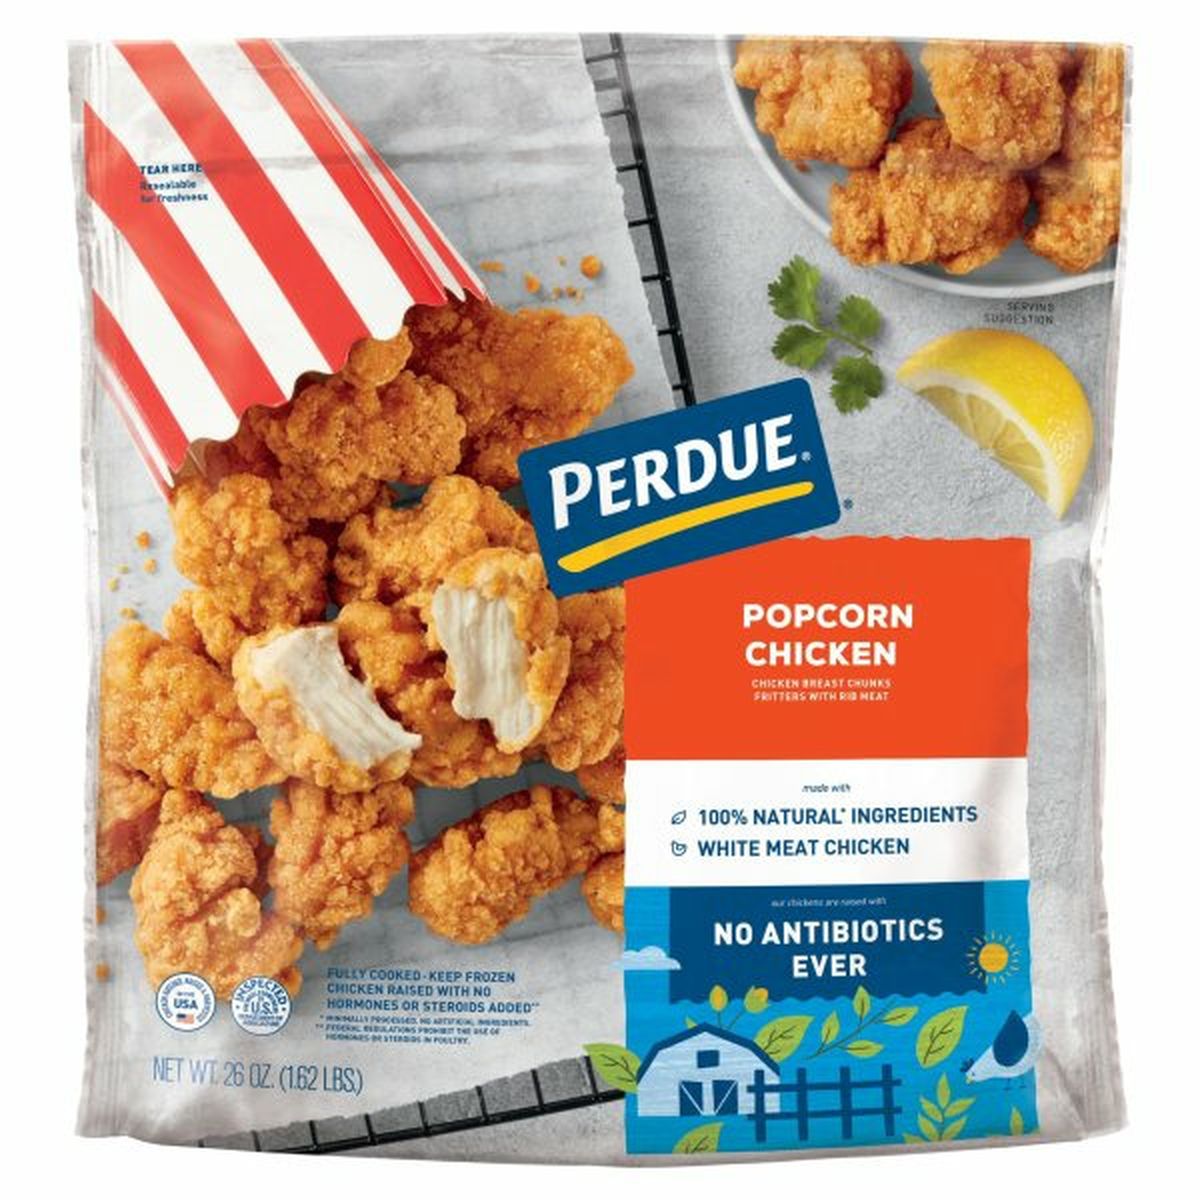 Calories in Perdue Popcorn Chicken